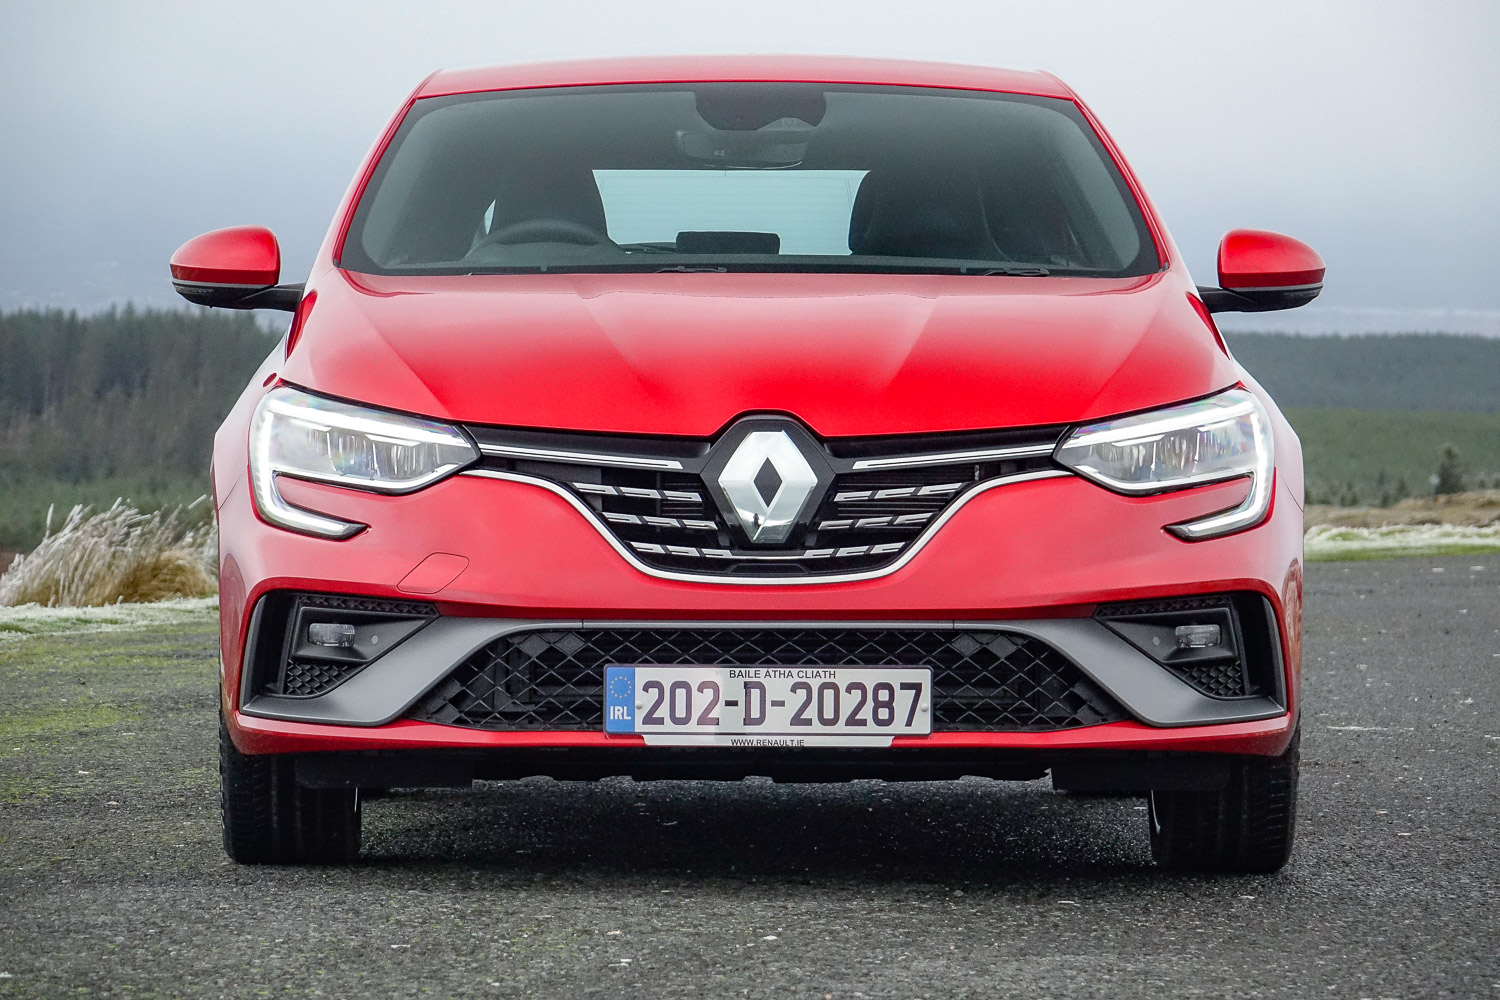 Renault Megane 1.5 dCi diesel (2020)